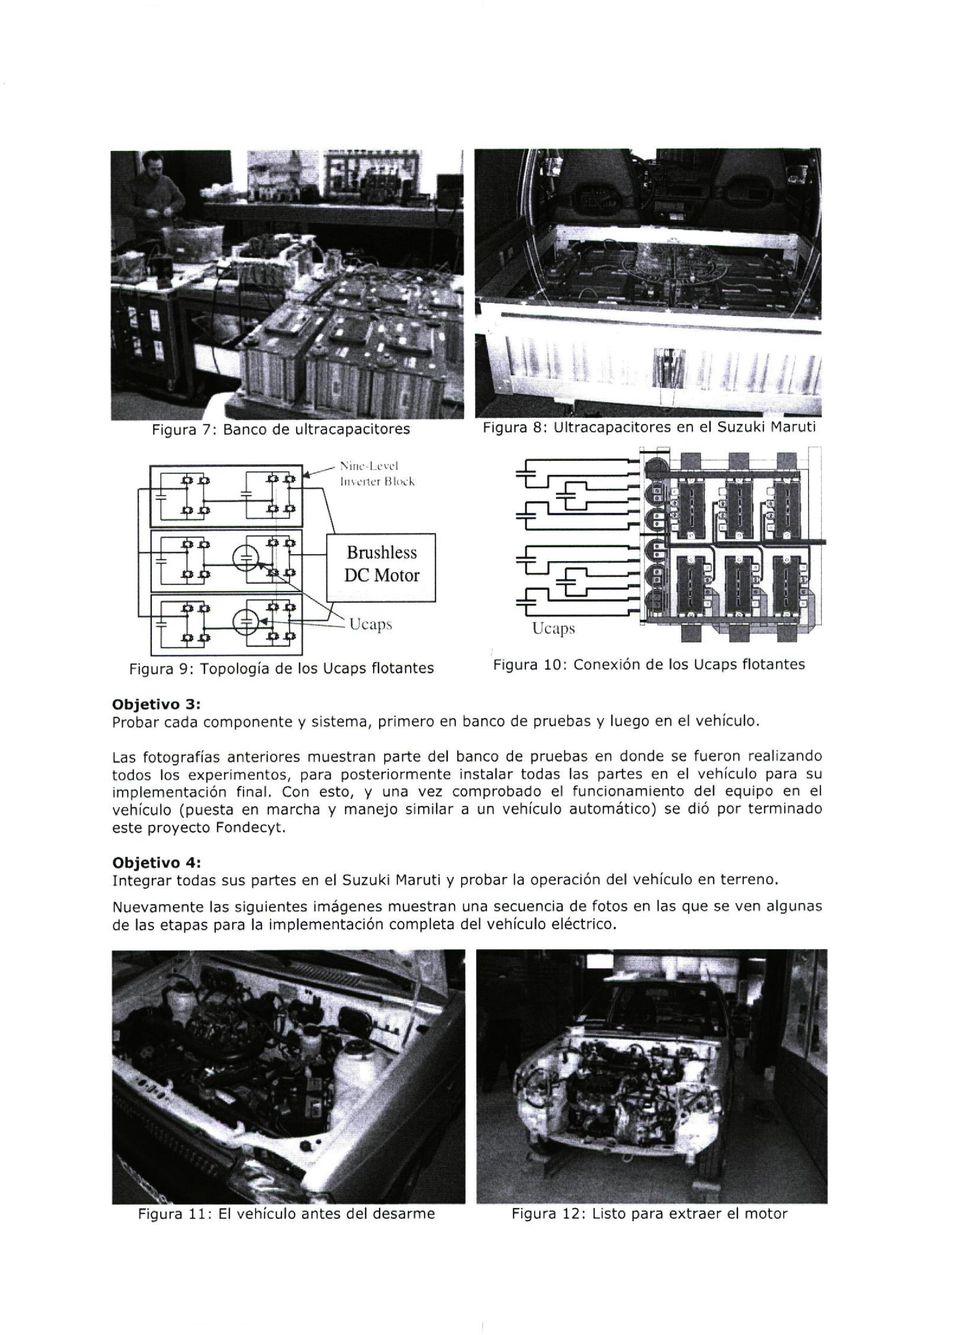 Las fotografías anteriores muestran parte del banco de pruebas en donde se fueron realizando todos los experimentos, para posteriormente instalar todas las partes en el vehículo para su